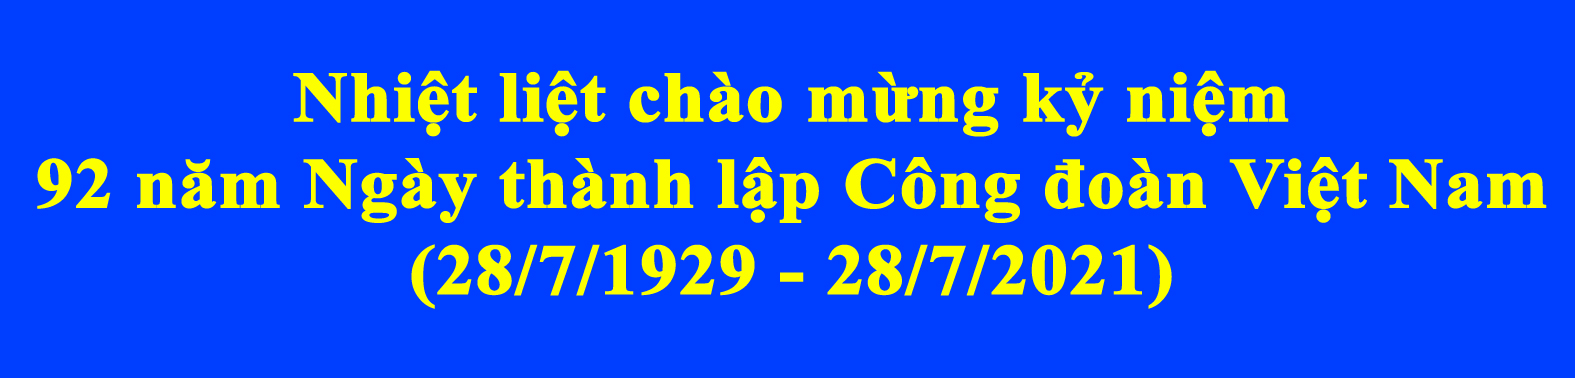 Banner_Ngay_thanh_lap_Cong_Doan_VN_a1e0905bde